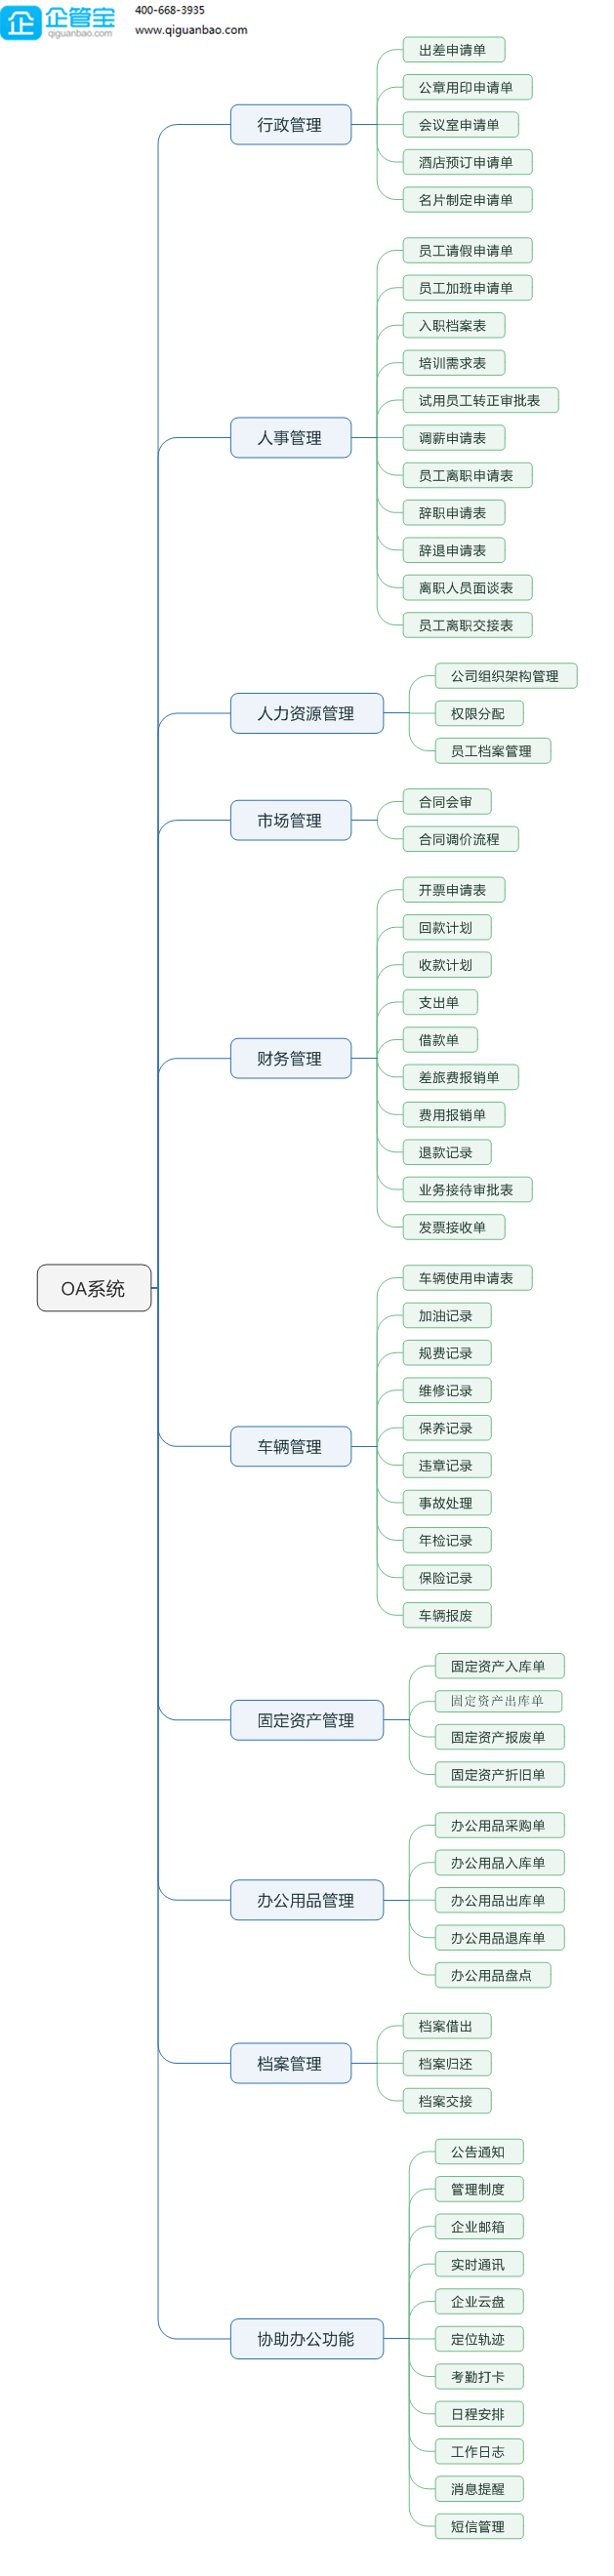 天津供应链系统管理